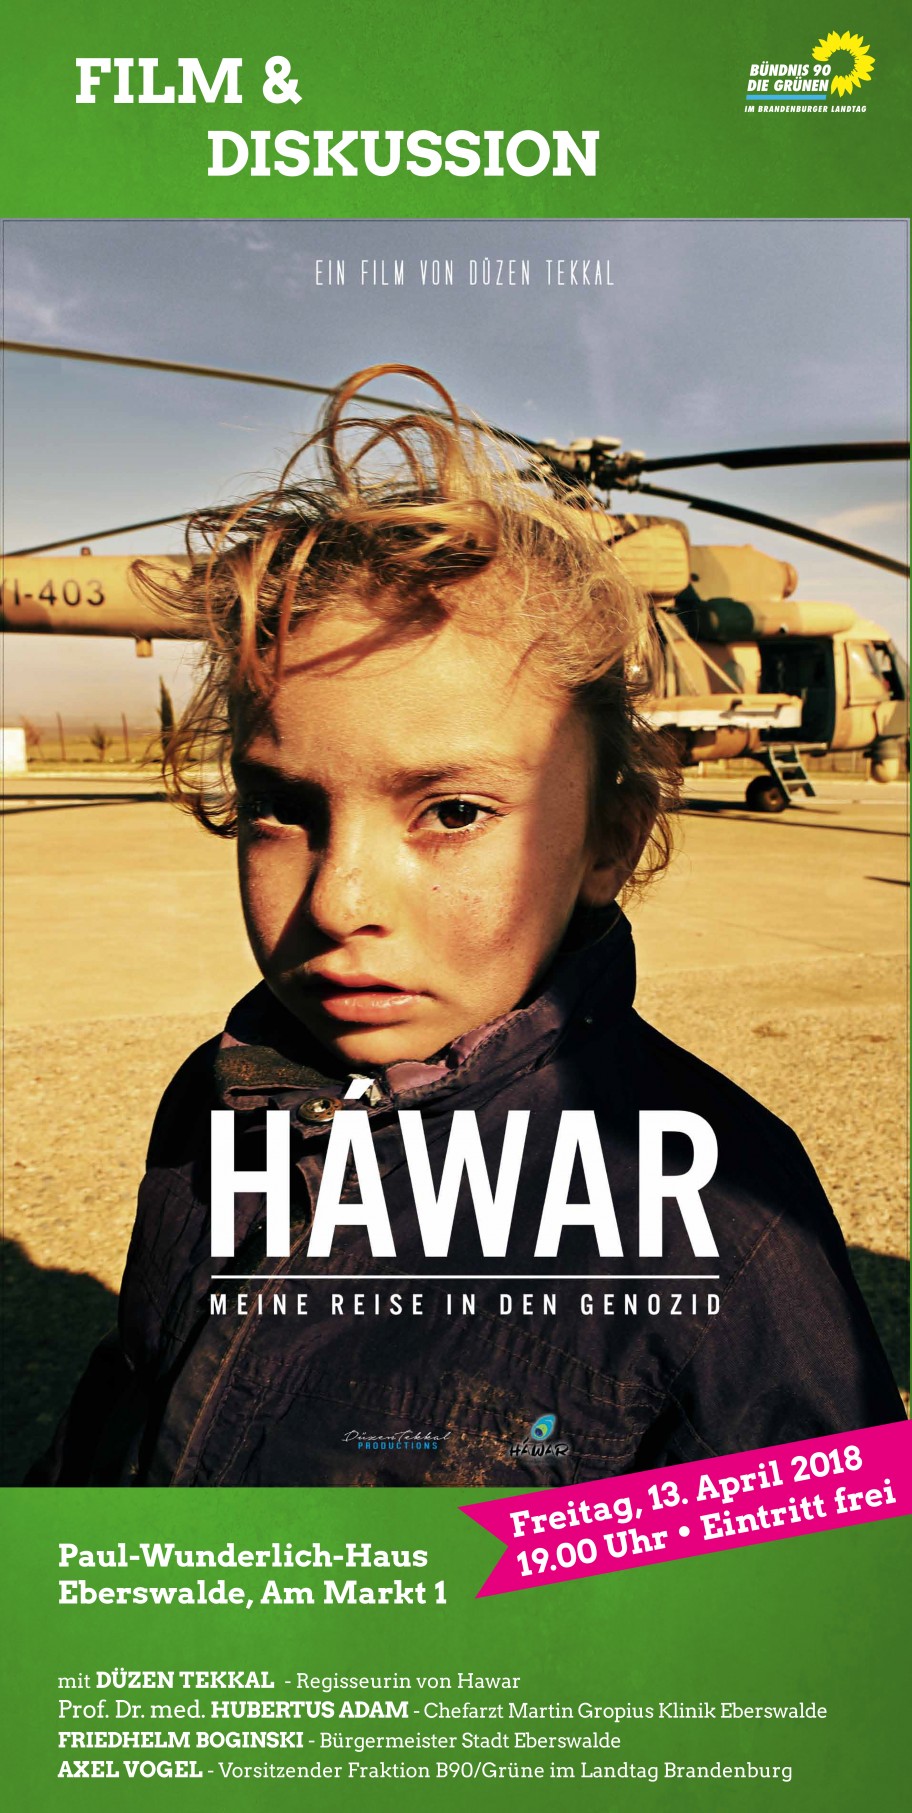 Plakat zum Filmabend "Hawar" am 13. April 2018